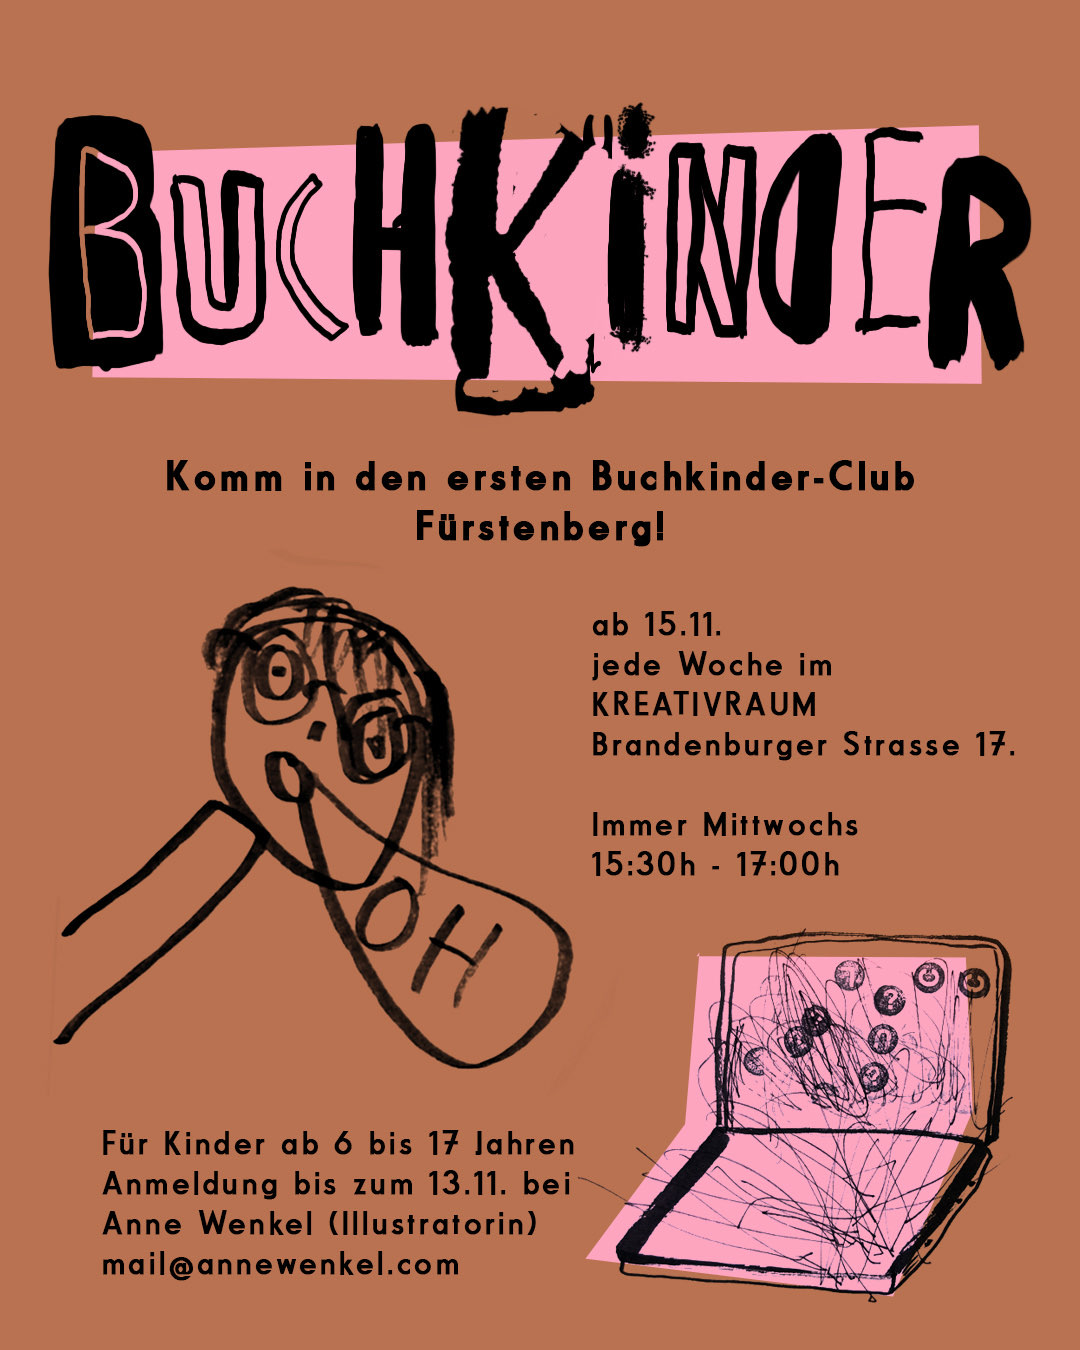 You are currently viewing “Buchkinder” in Fürstenberg